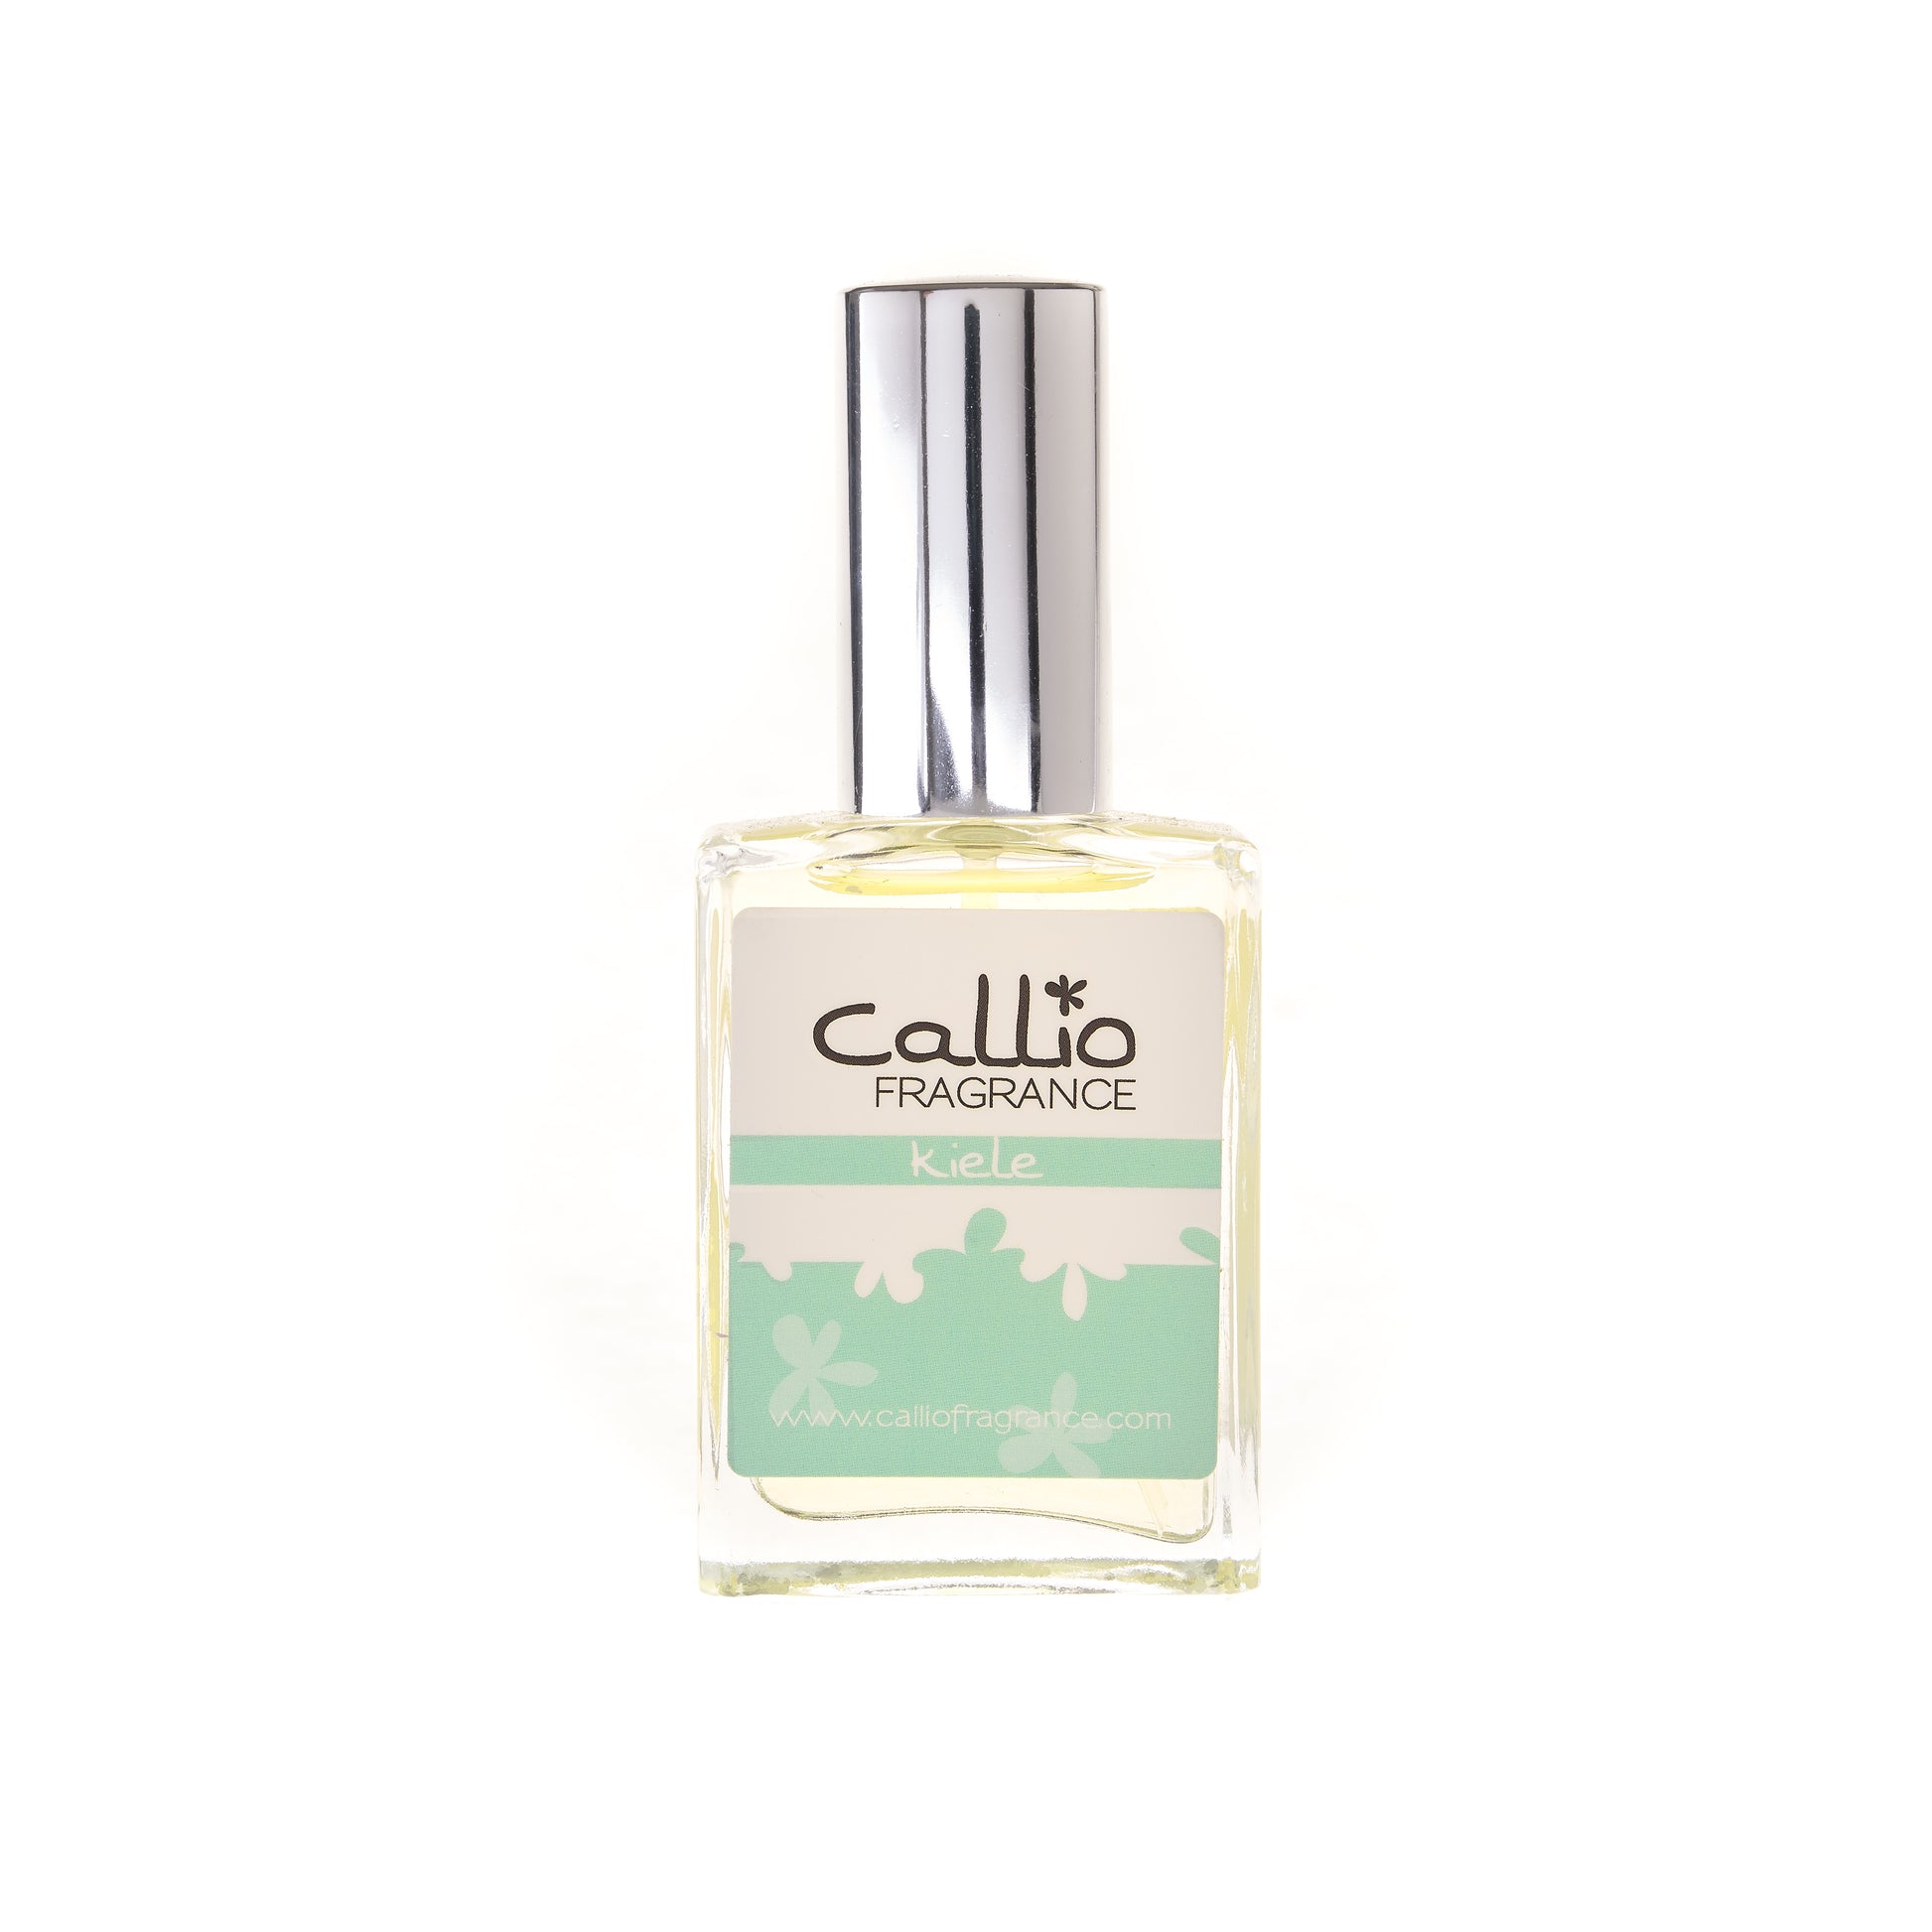 Kiele Perfume -Callio Fragrance one ounce glass bottle with silver cap